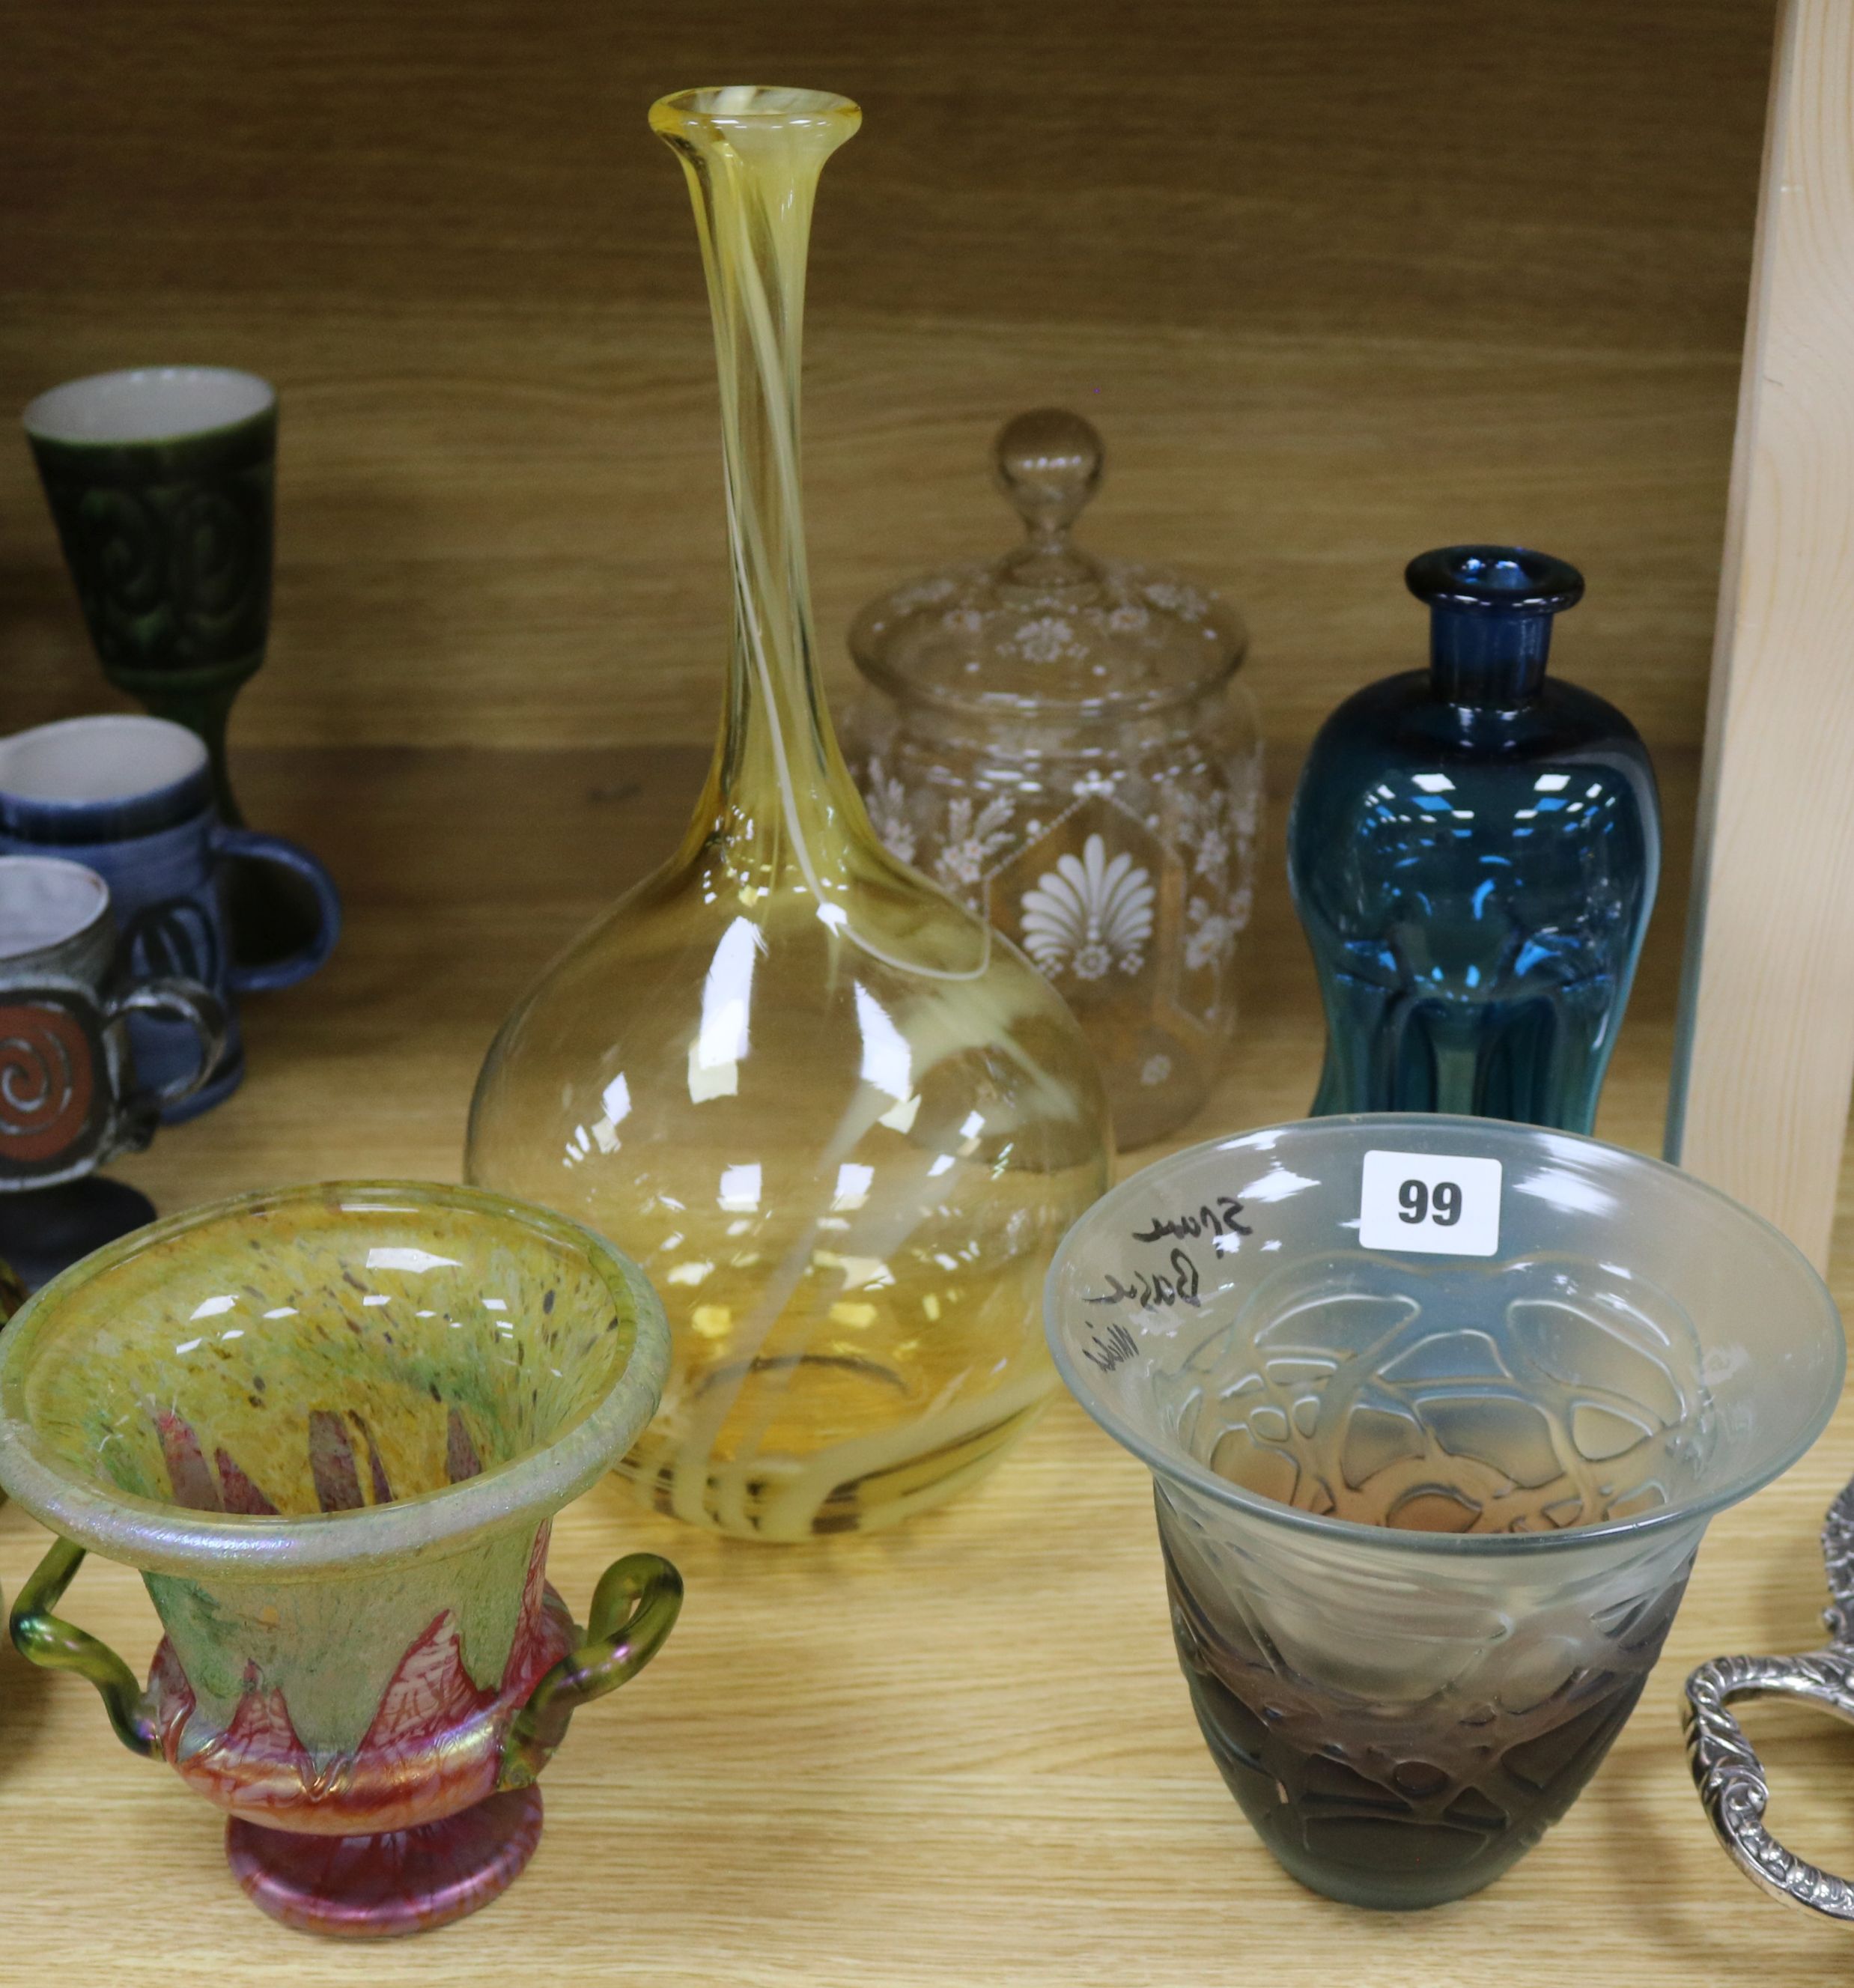 A quantity of decorative coloured glassware